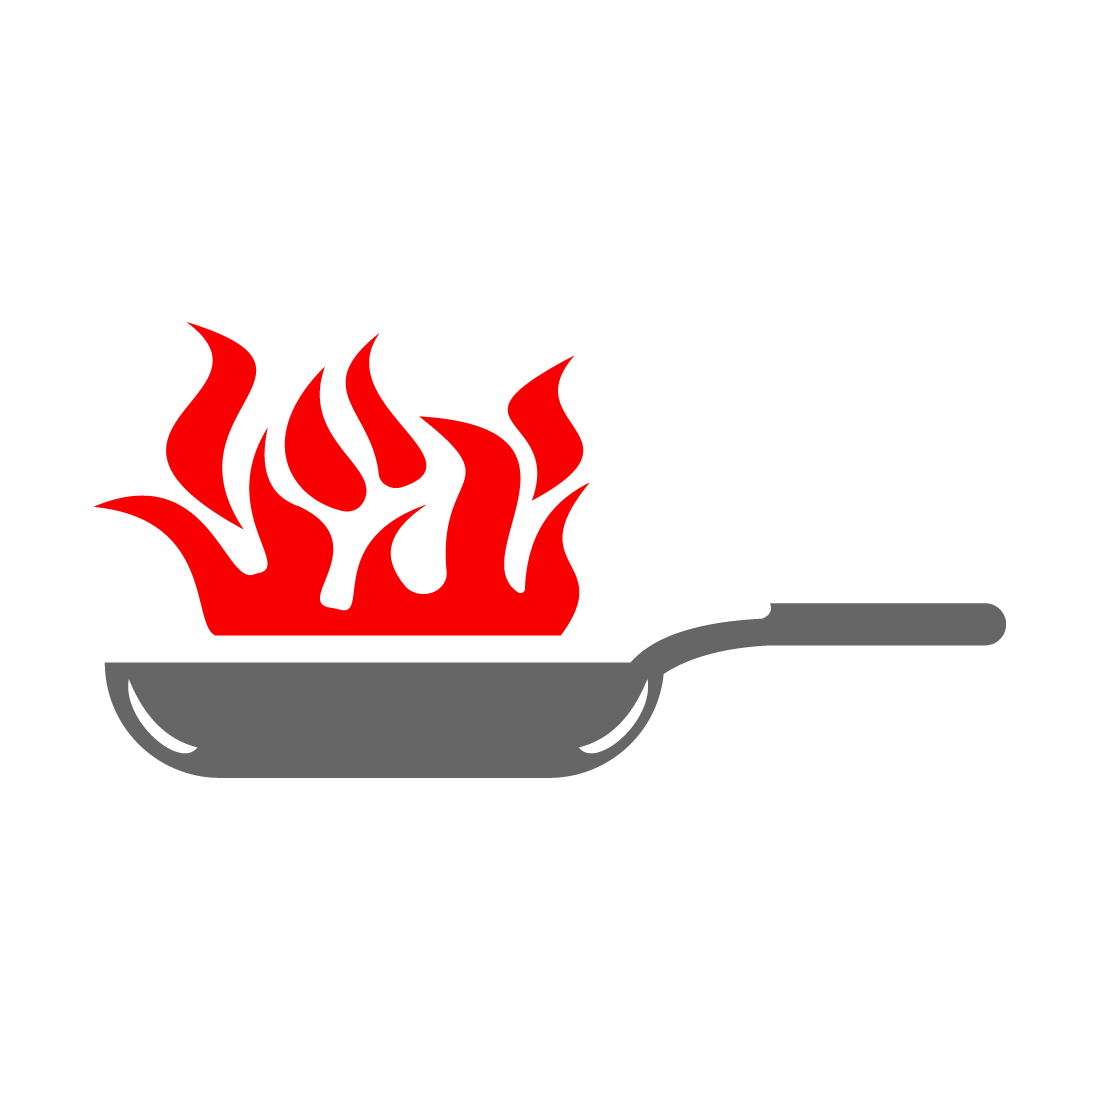 Cooking, cuisine, cookery logo Restaurant, menu, cafe, diner label logo design, Vector illustration preview image.